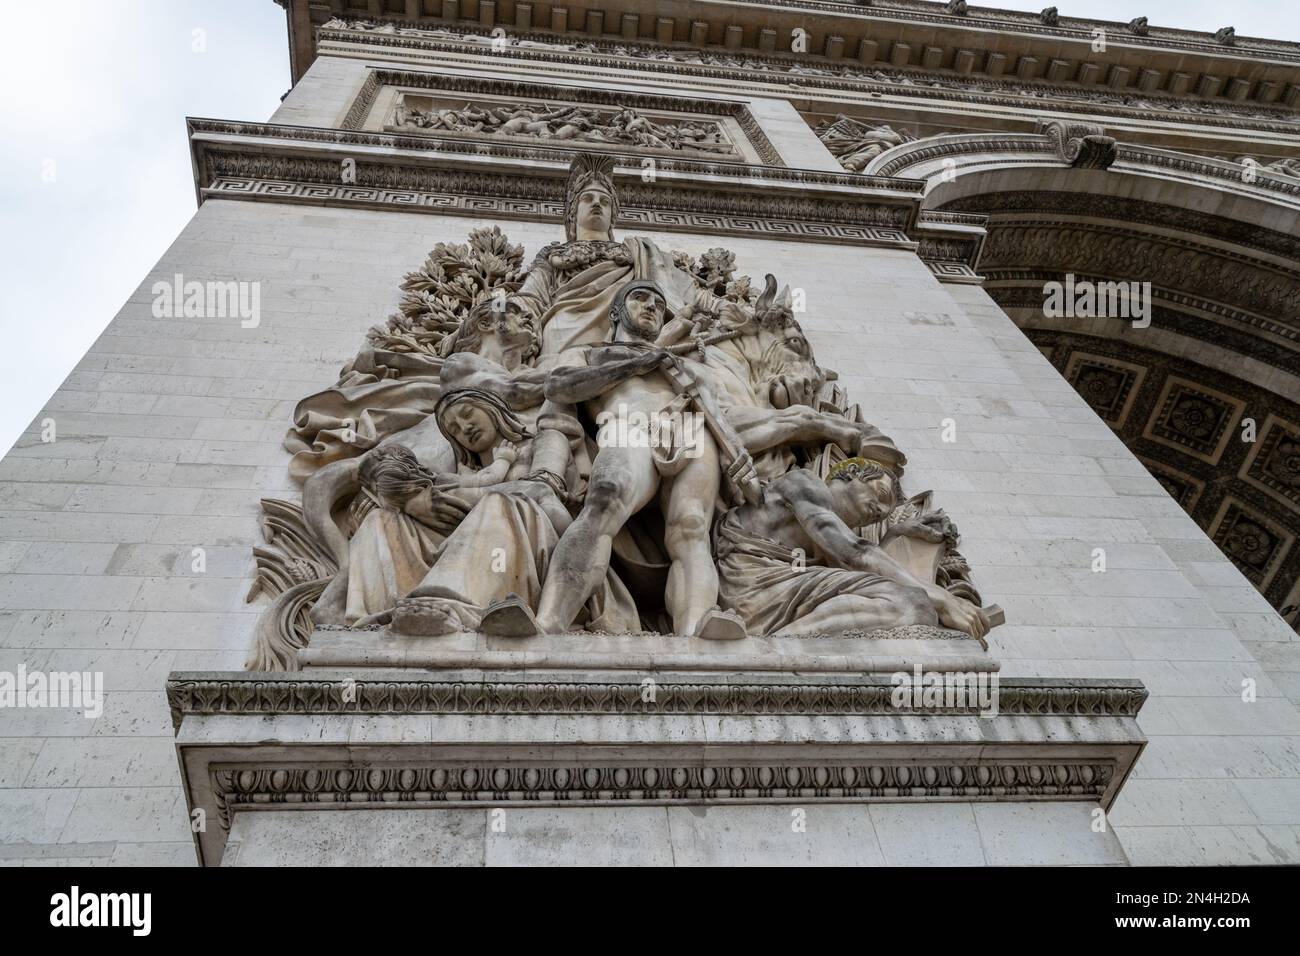 Arc de Triomphe à Paris, visite de Paris, Tourisme à Paris. Grands monuments européens, style Haussmann. Place Charles de Gaulle place de l'étoile. Banque D'Images